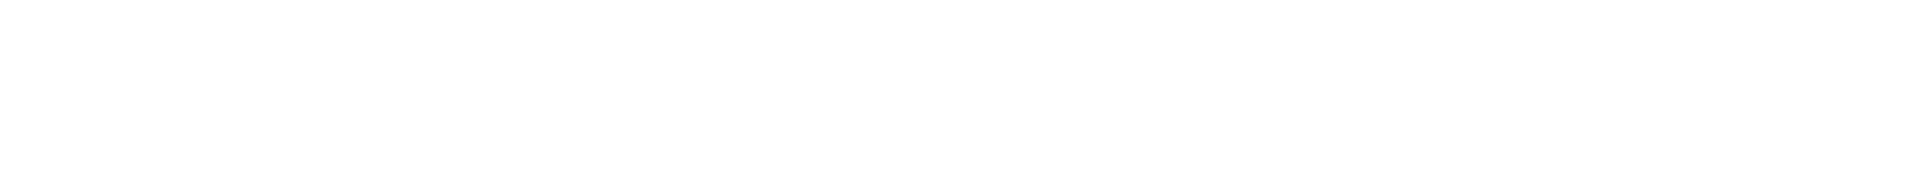 Greek Community of Melbourne desktop logo